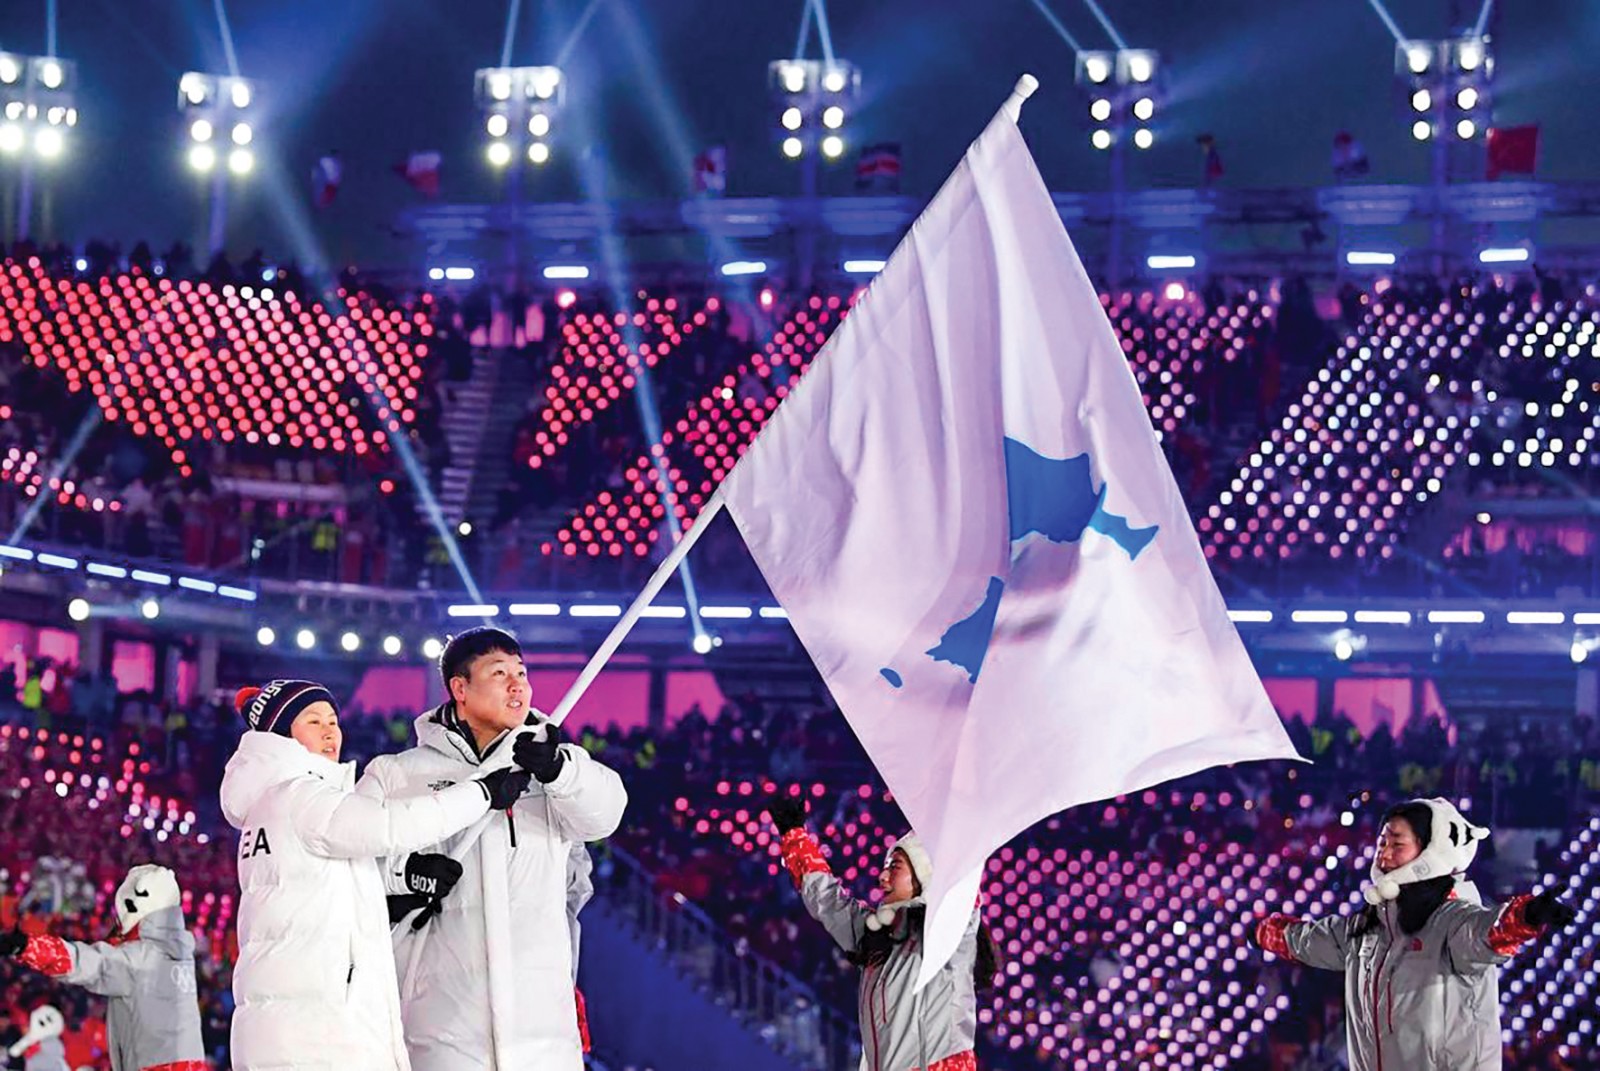 VĐV Hàn Quốc và Triều Tiên diễu hành dưới lá cờ chung tại Lễ Khai mạc PyeongChang 2018. Ảnh: Getty Images